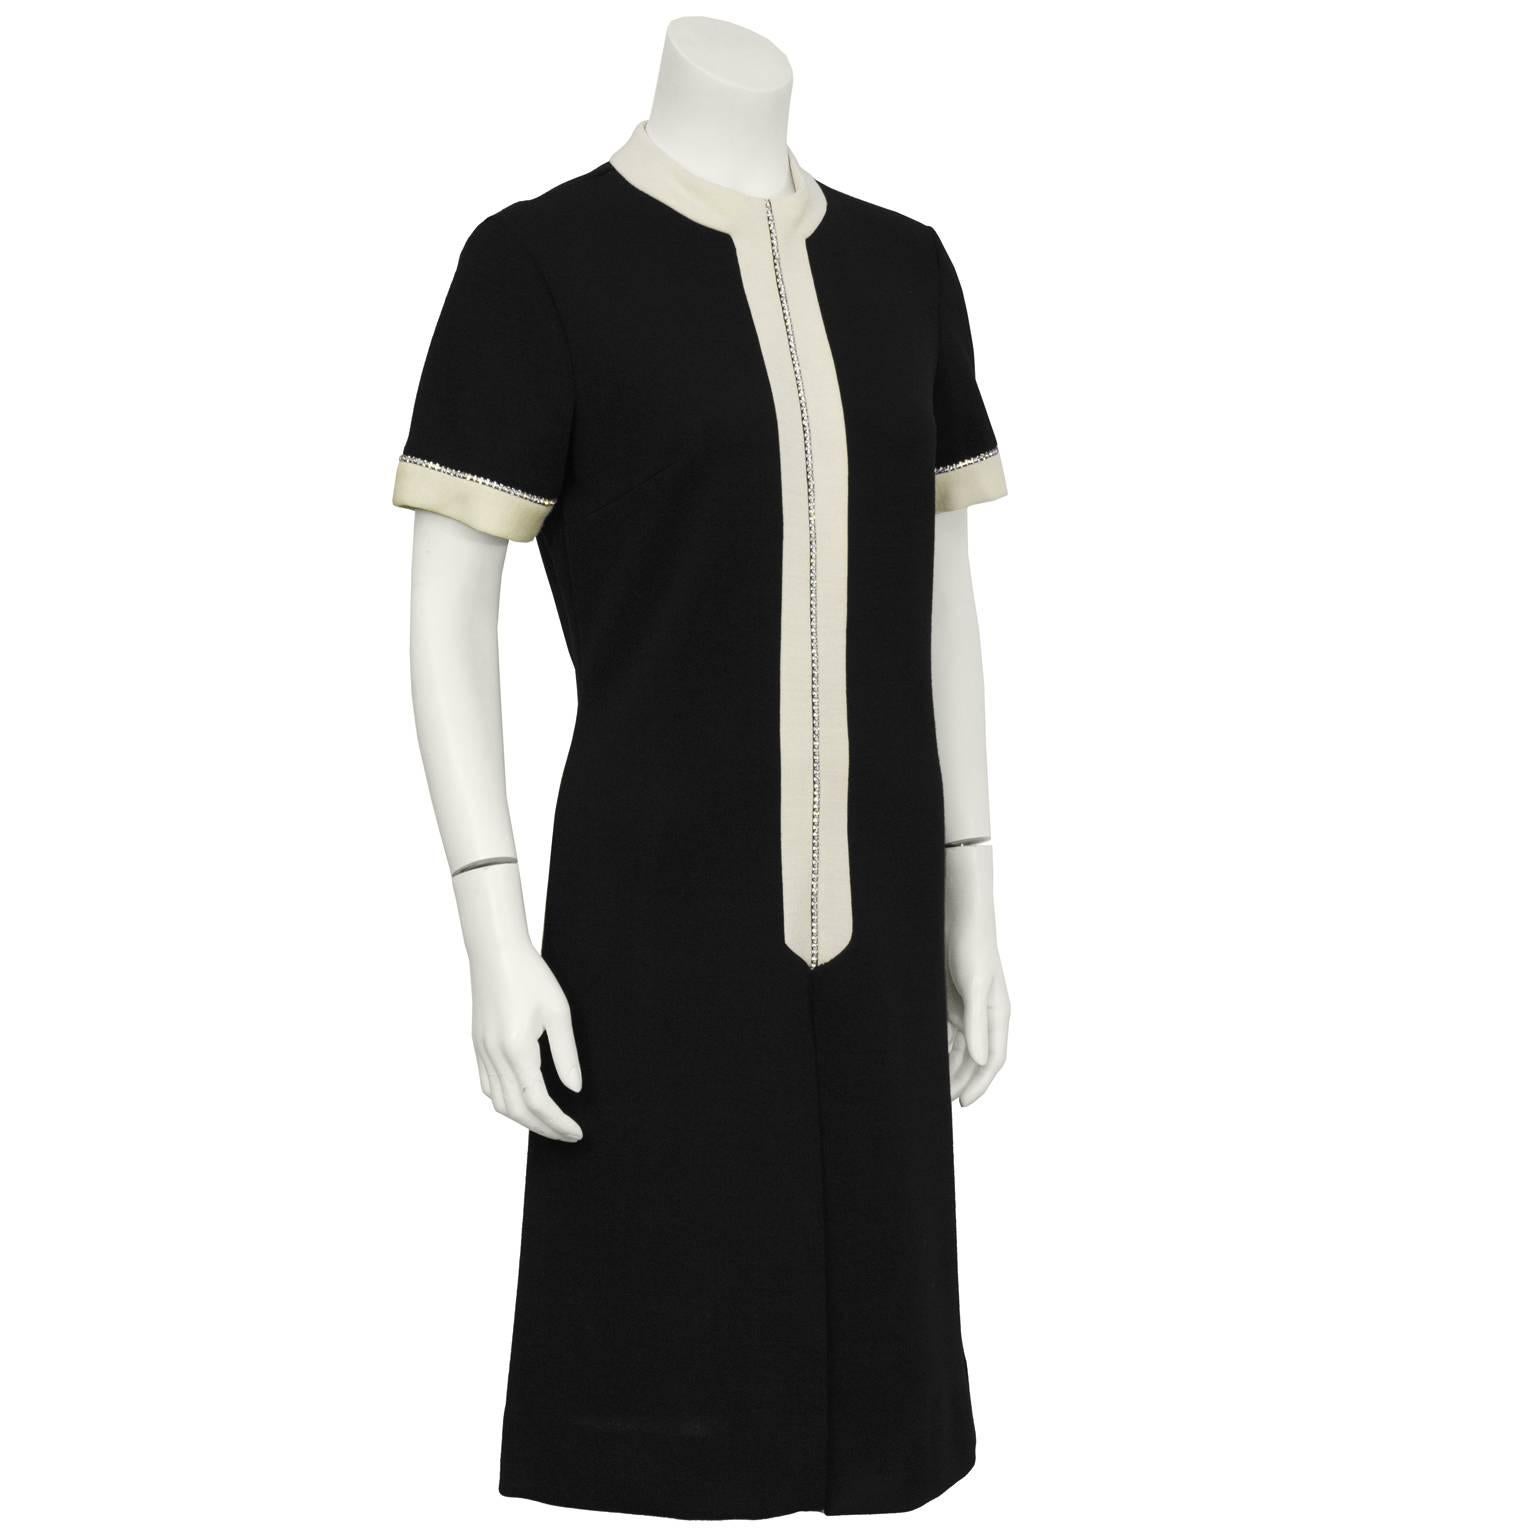 strickkleid aus den 1960er Jahren mit strassbesetztem Detail. Das Kleid hat einen hohen Kragen mit cremefarbener Strickleiste, die vorne und an den Manschetten mit einem Strass-Detail verziert ist. Umgekehrte Falte auf der Vorderseite und